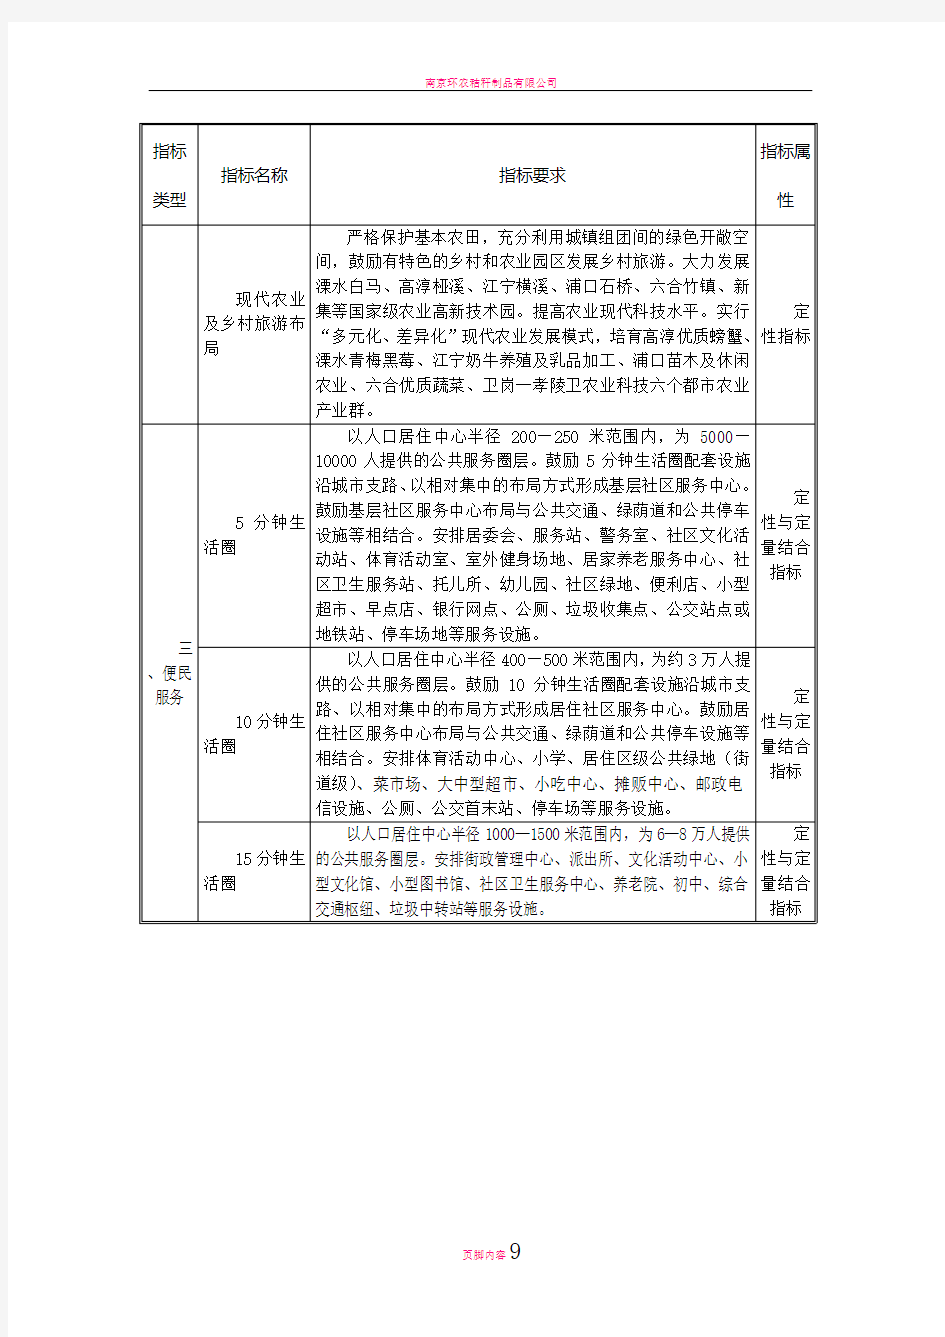 南京现代化城市规划导则指标体系一览表